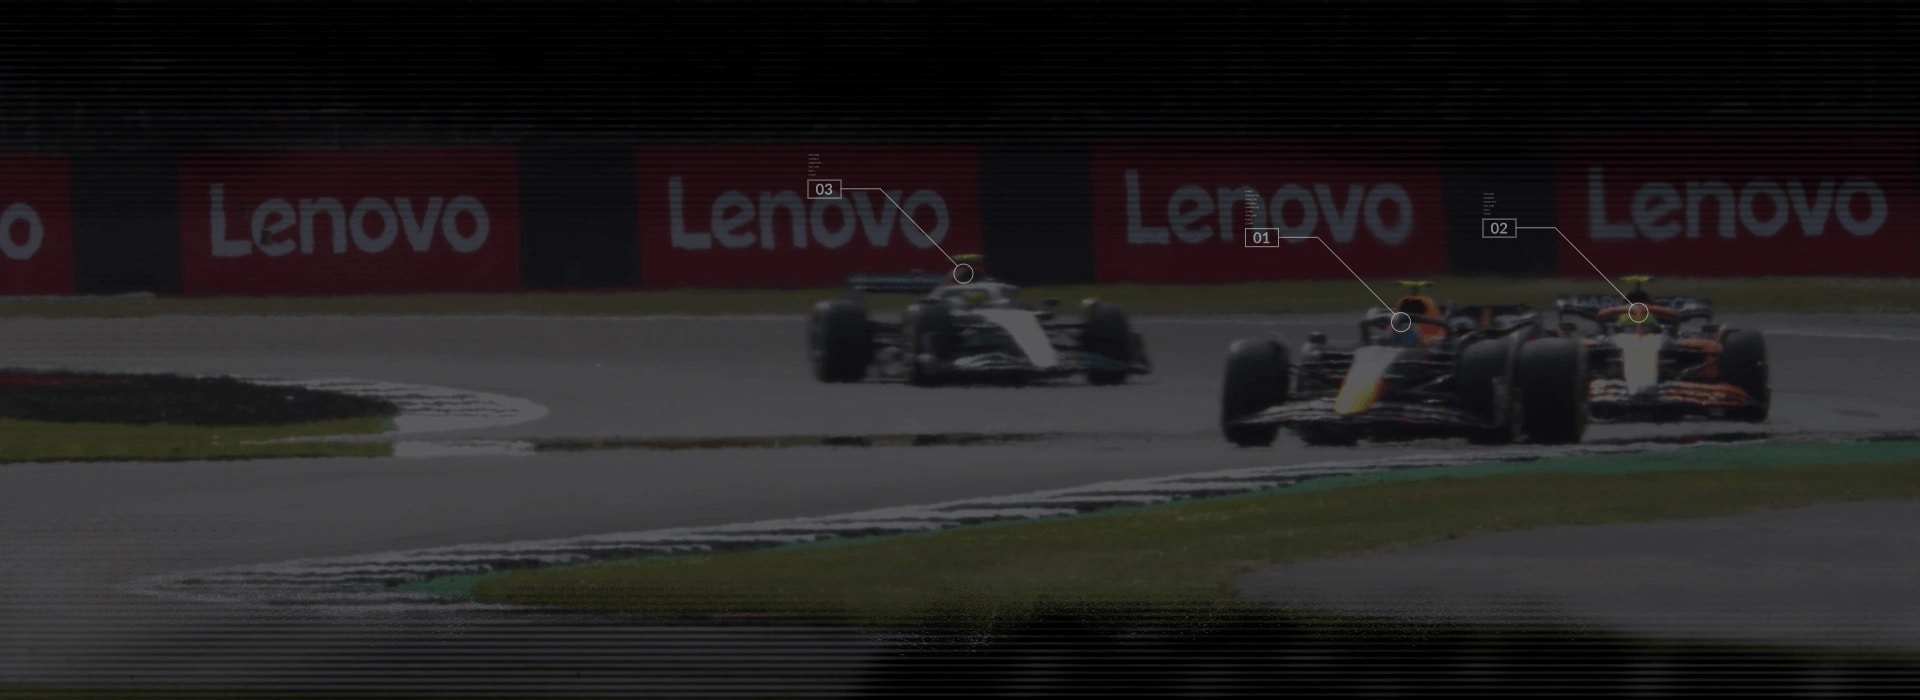 3 F1-es autó a versenypályán Lenovo bannerekkel a háttérben